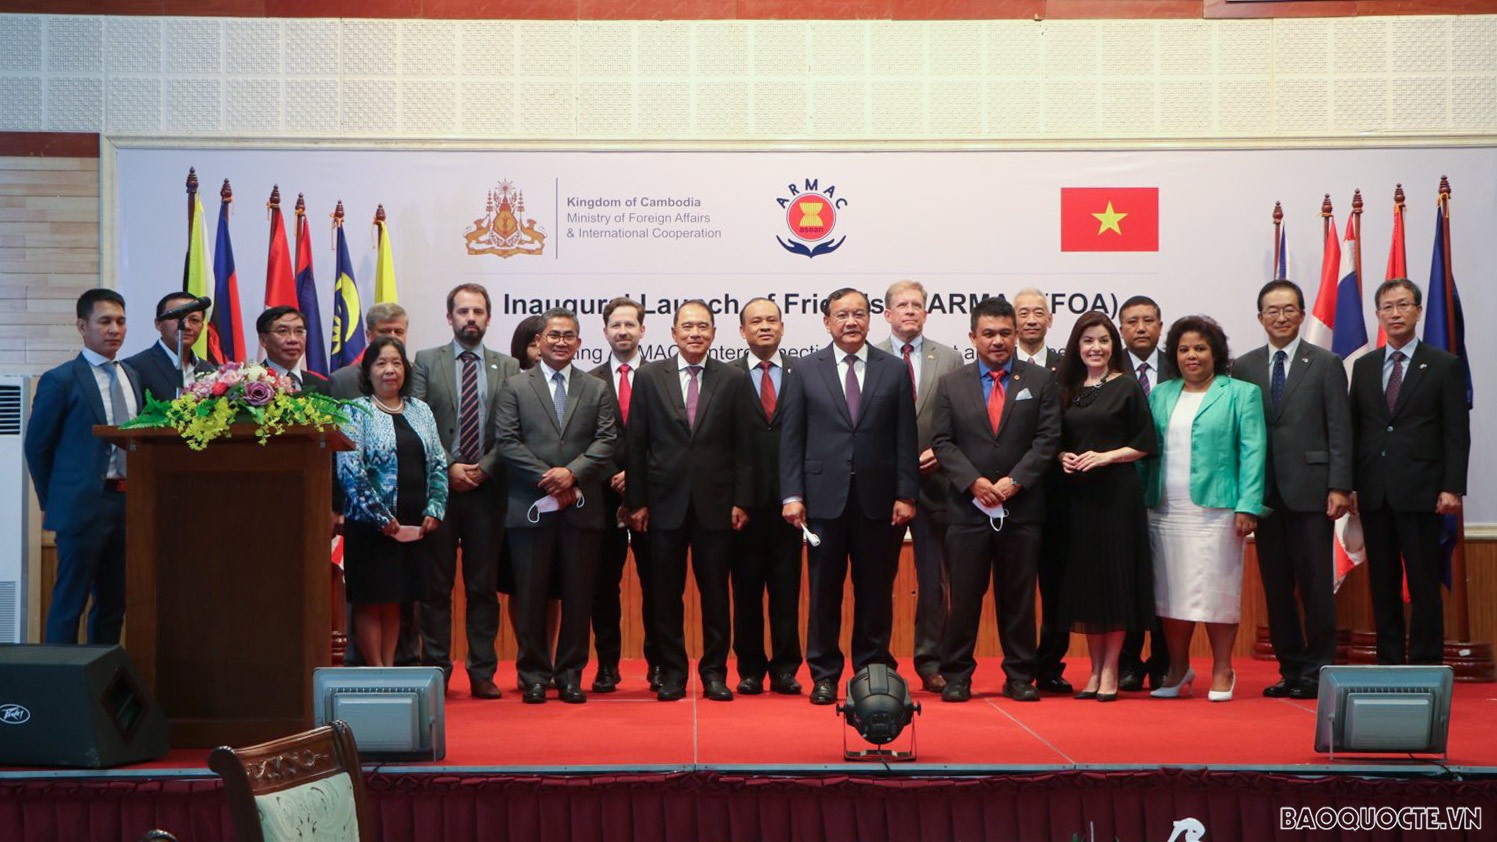 Phó Thủ tướng, Bộ trưởng Ngoại giao Campuchia Prak Sokhonn, đại diện Đại sứ quán các nước, các Tổ chức quốc tế tham dự Lễ ra mắt Những người bạn của ARMAC (FOA).